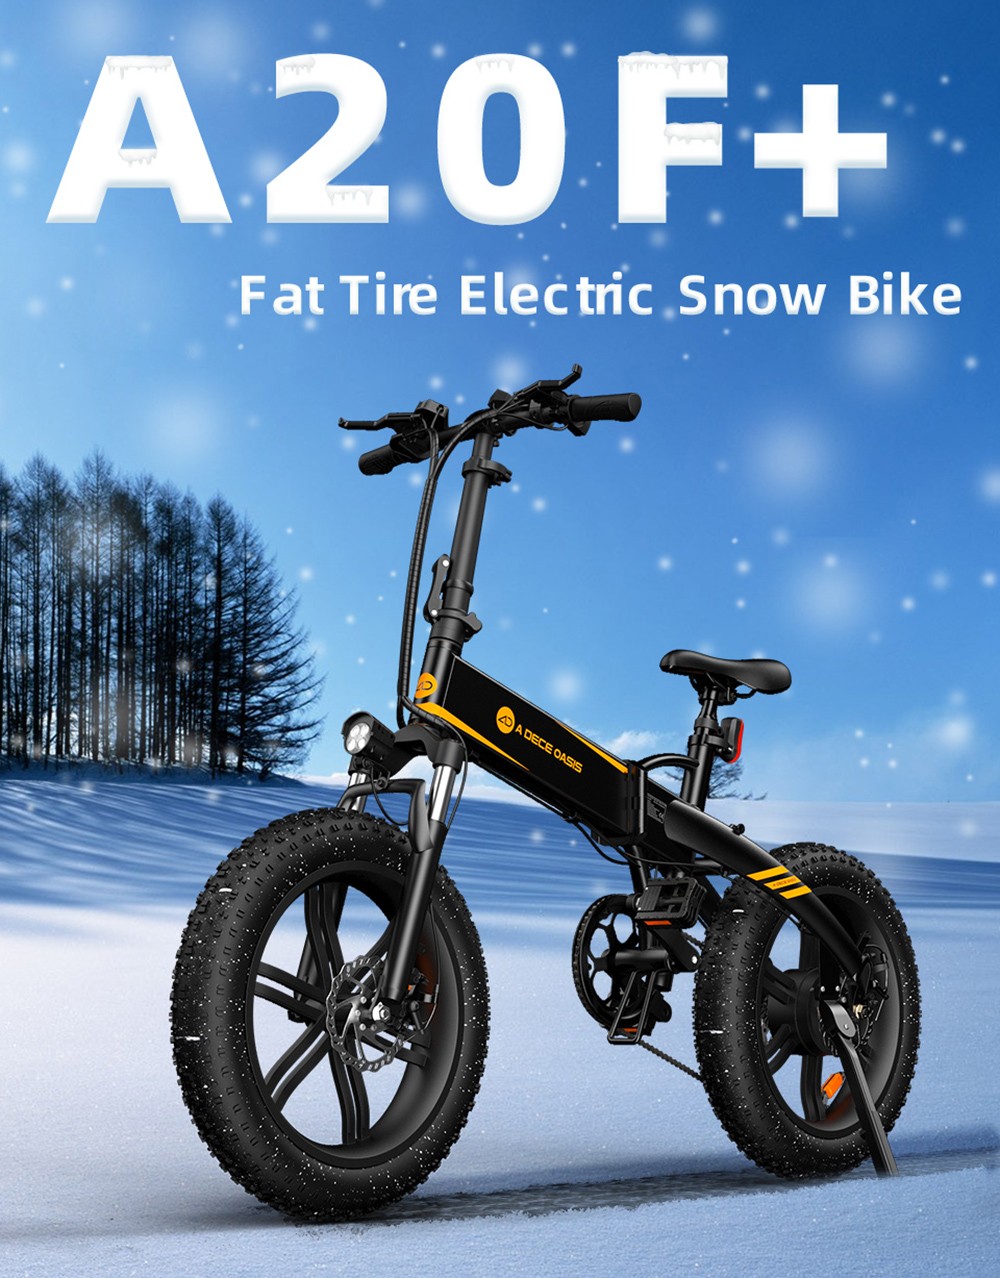 ADO A20F + Bicicleta eléctrica todoterreno plegable 20 * 4.0 pulgadas 500W Motor de CC sin escobillas SHIMANO Desviador trasero de 7 velocidades 36V 10.4Ah Batería extraíble 35 km / h Velocidad máxima Potencia pura hasta 50 km Alcance Marco de aleación de aluminio - Negro